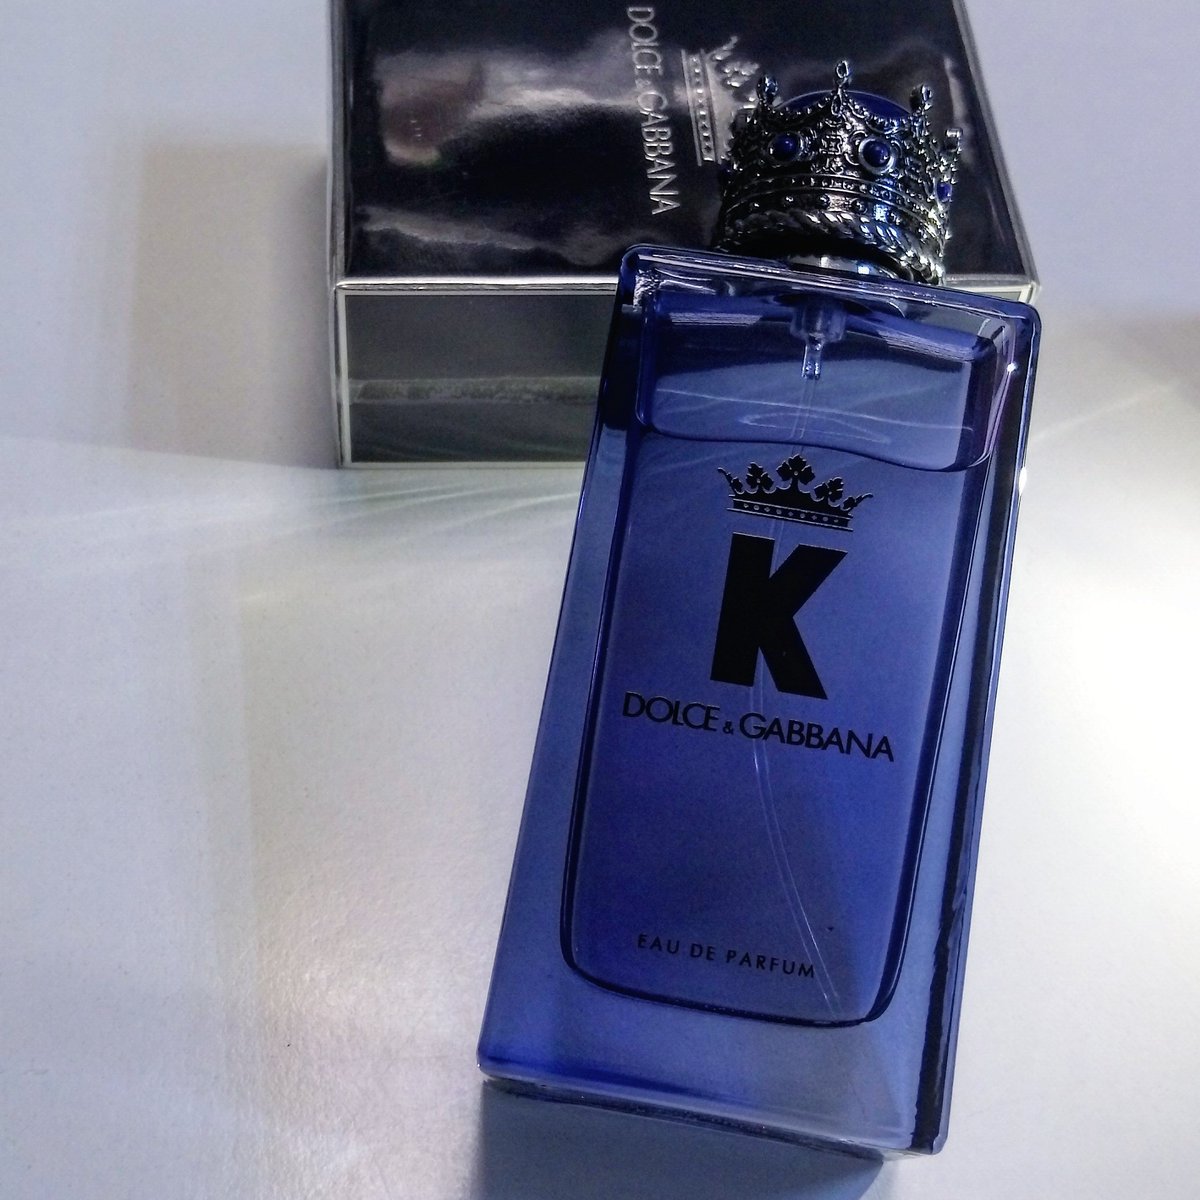 Ostatnio były same damskie zapachy, więc dzisiaj mamy dla Was K by Dolce&Gabbana EDP - nową wodę perfumowaną dla mężczyzn 😍👍
.
#KbyDolceGabbana #KbyDG #ownyourcrown #crown #perfume #parfum #scent #fragrance #perfumery #scentoftheday #gift #аромат #perfumy #zapachy #zapach